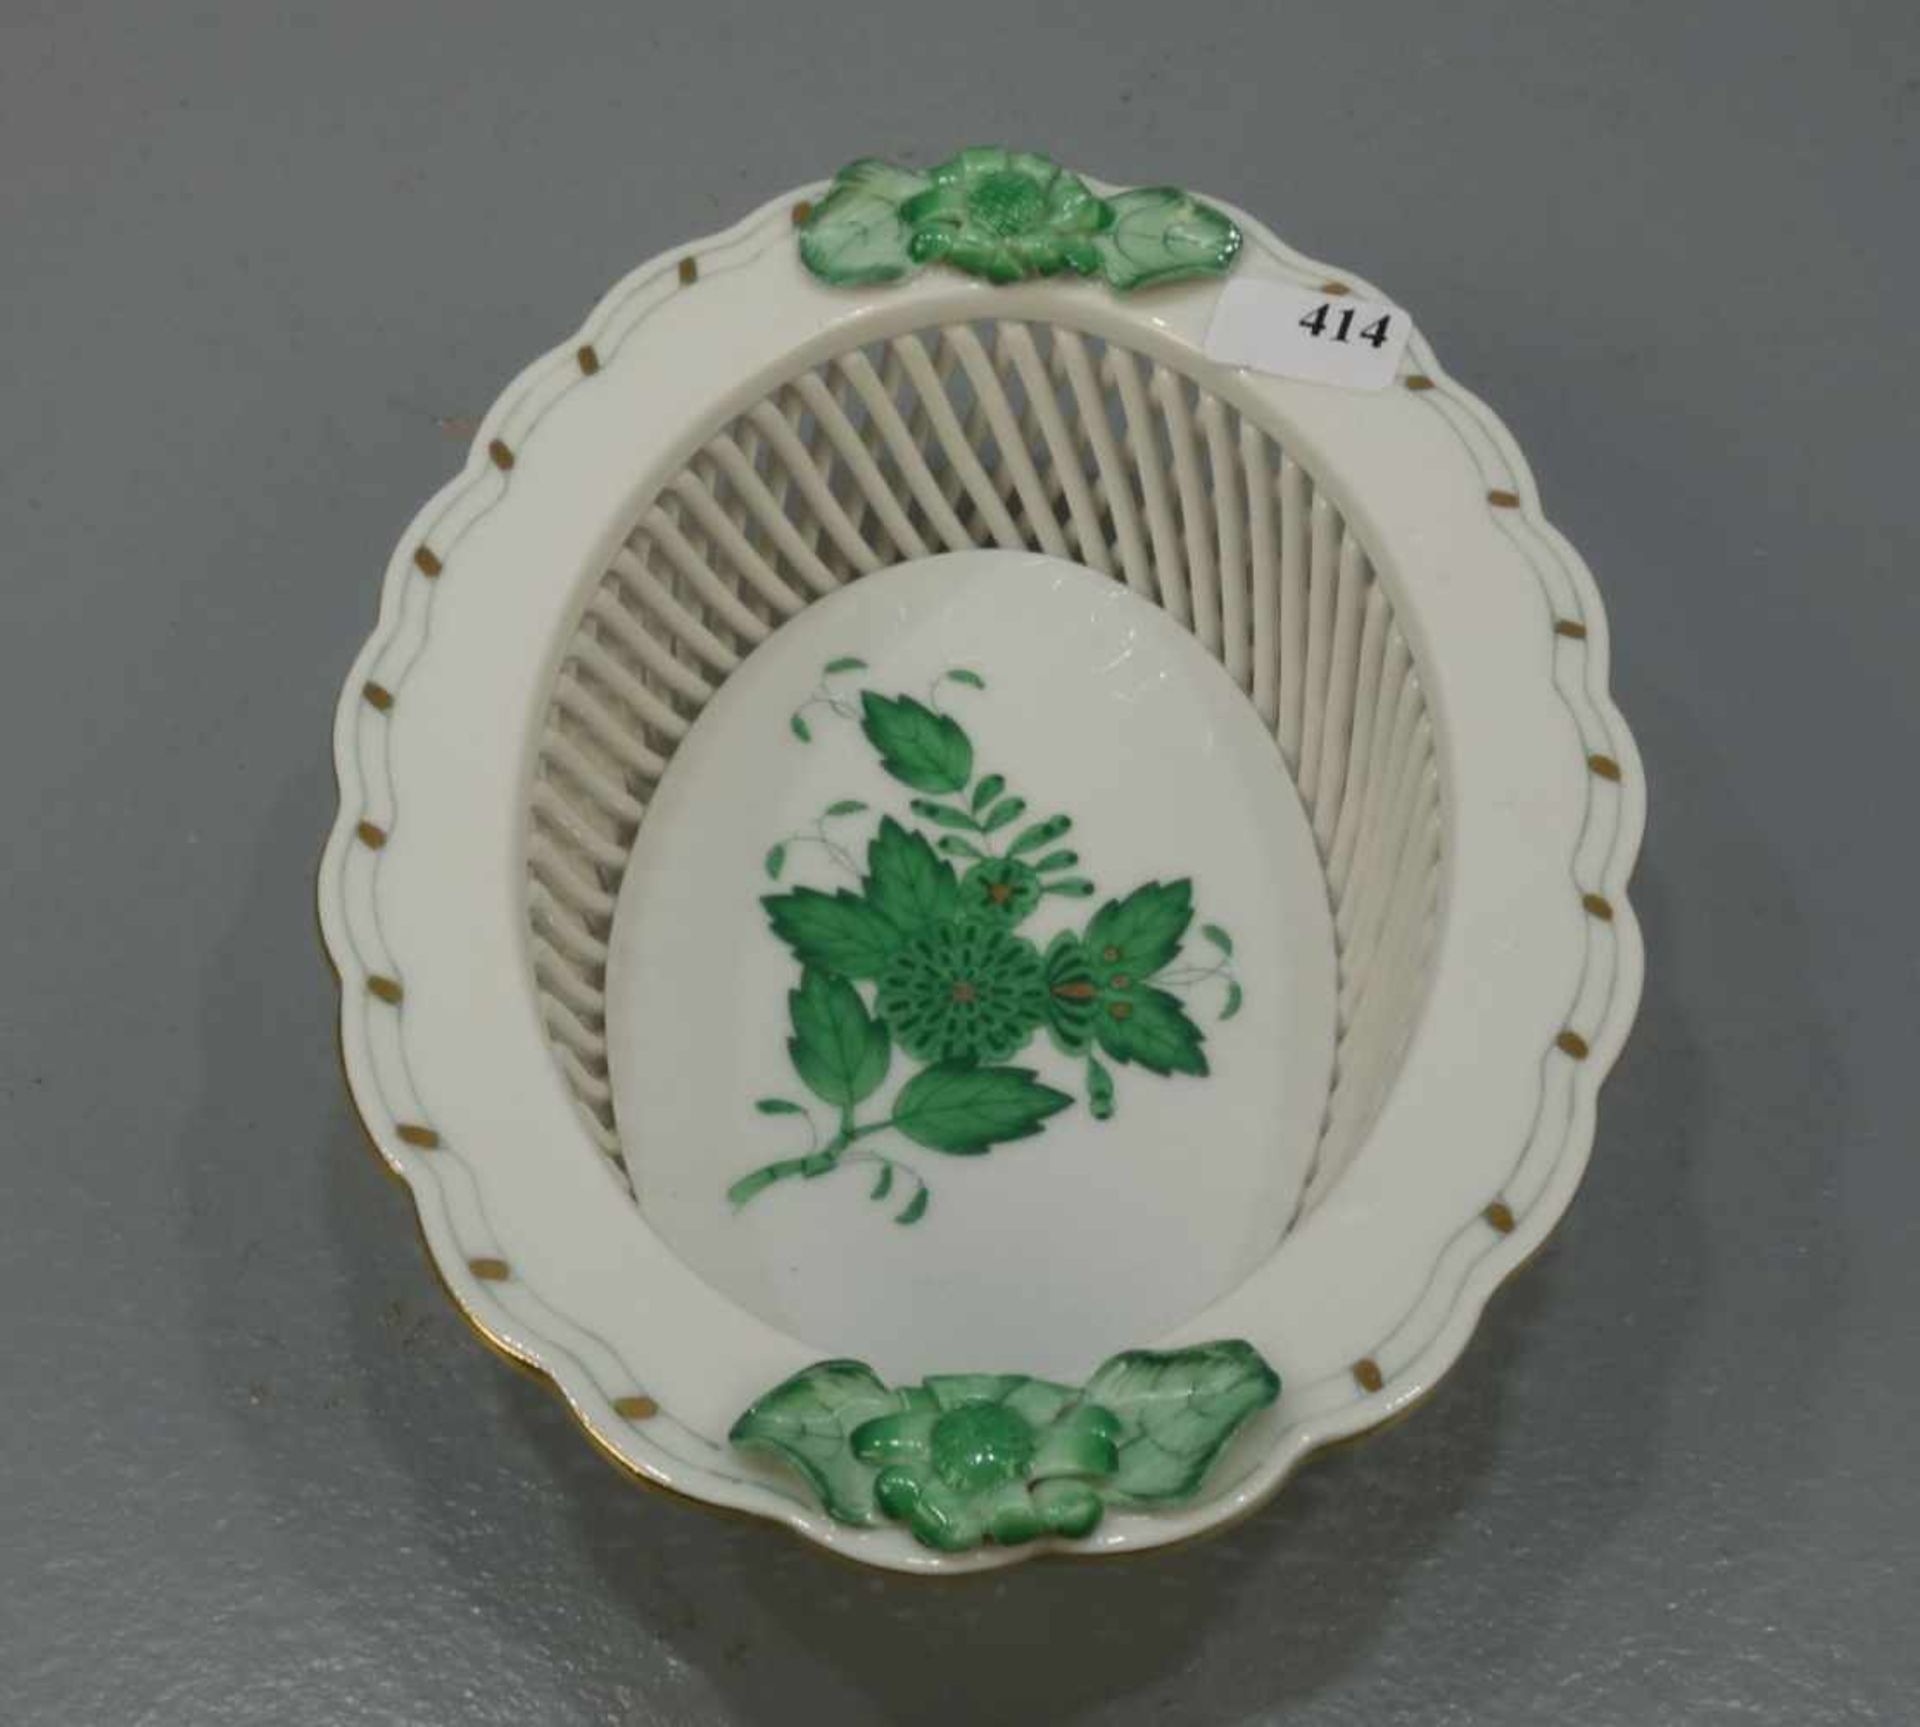 KORBSCHALE / porcelain bowl, Porzellan, Manufaktur Herend / Ungarn. Ovale Korbschale im